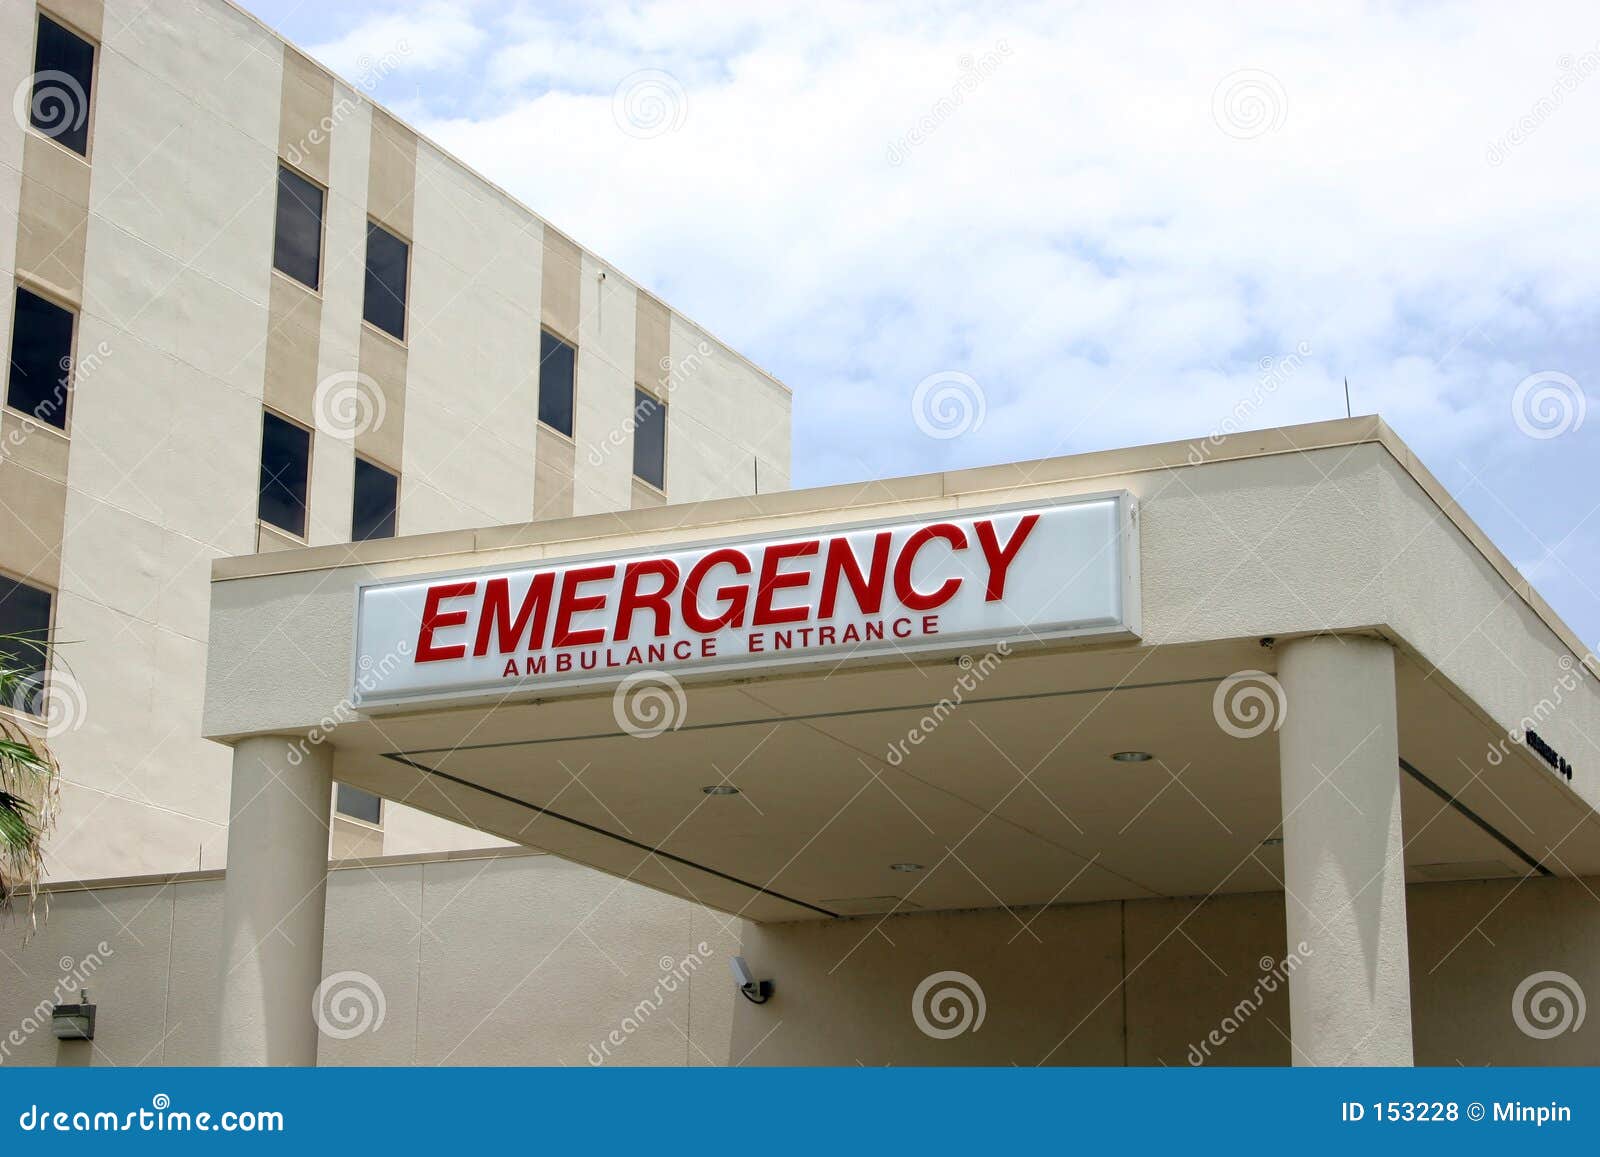 Hospital Emergency Entrance Stock Photo - Image of ...